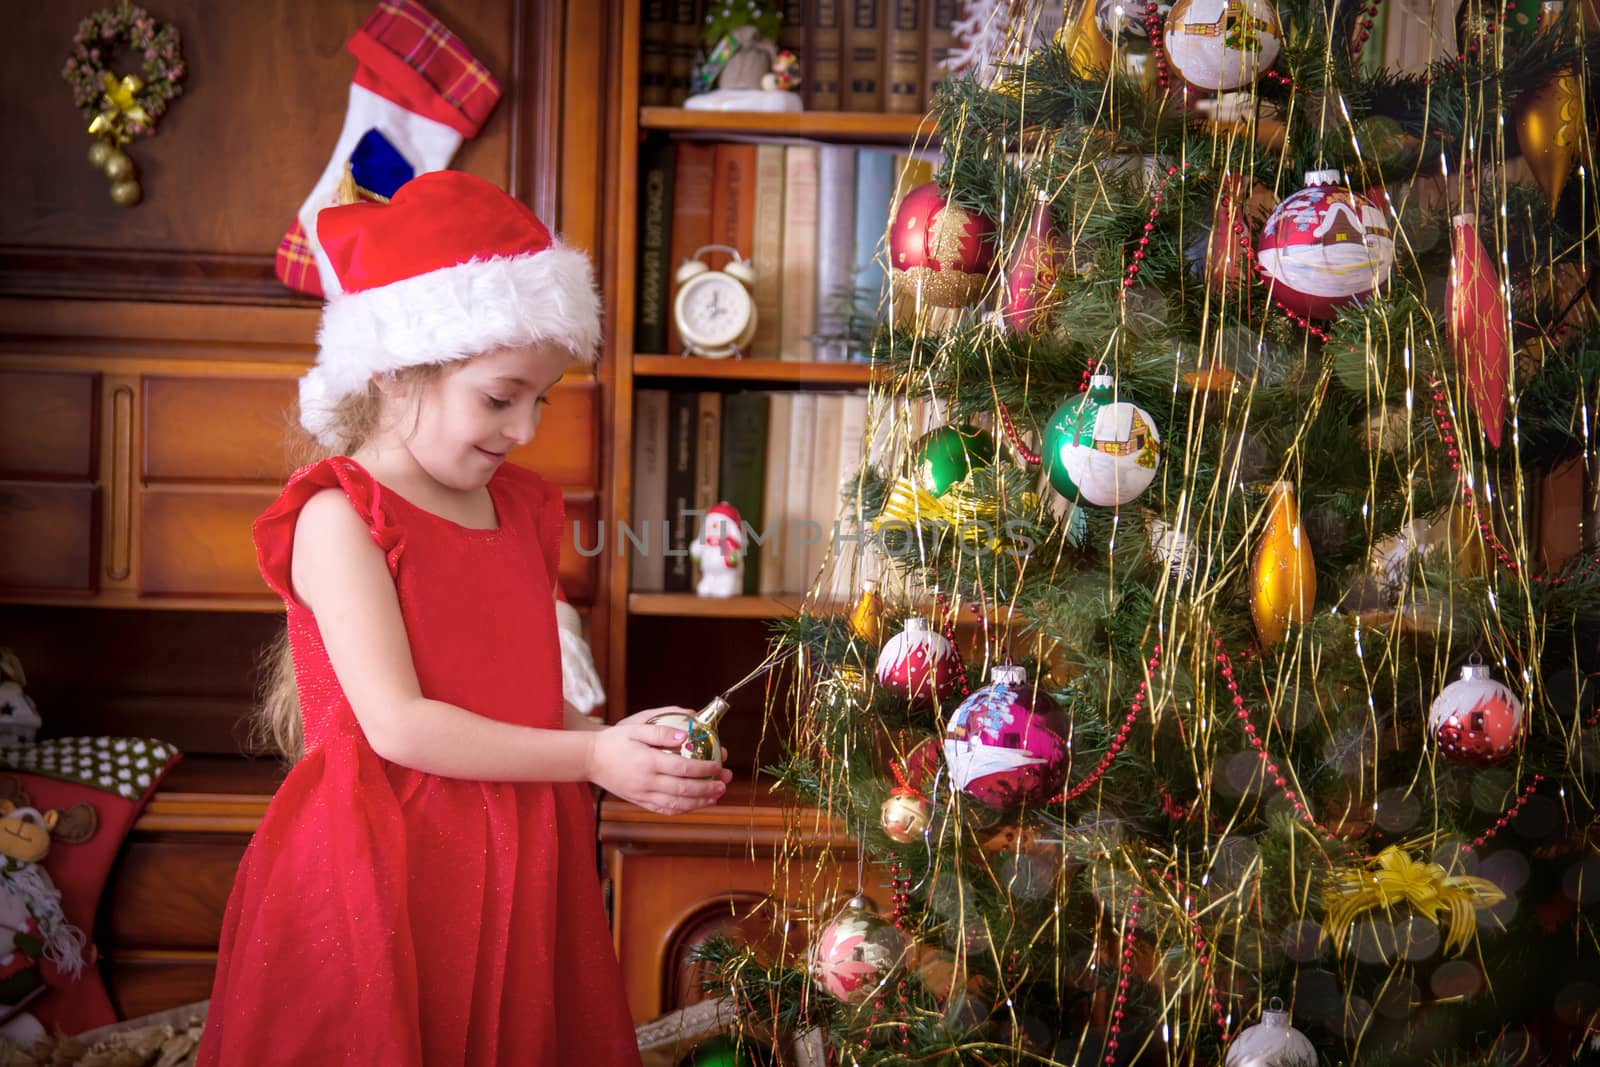 Girl with ball admiring Christmas tree